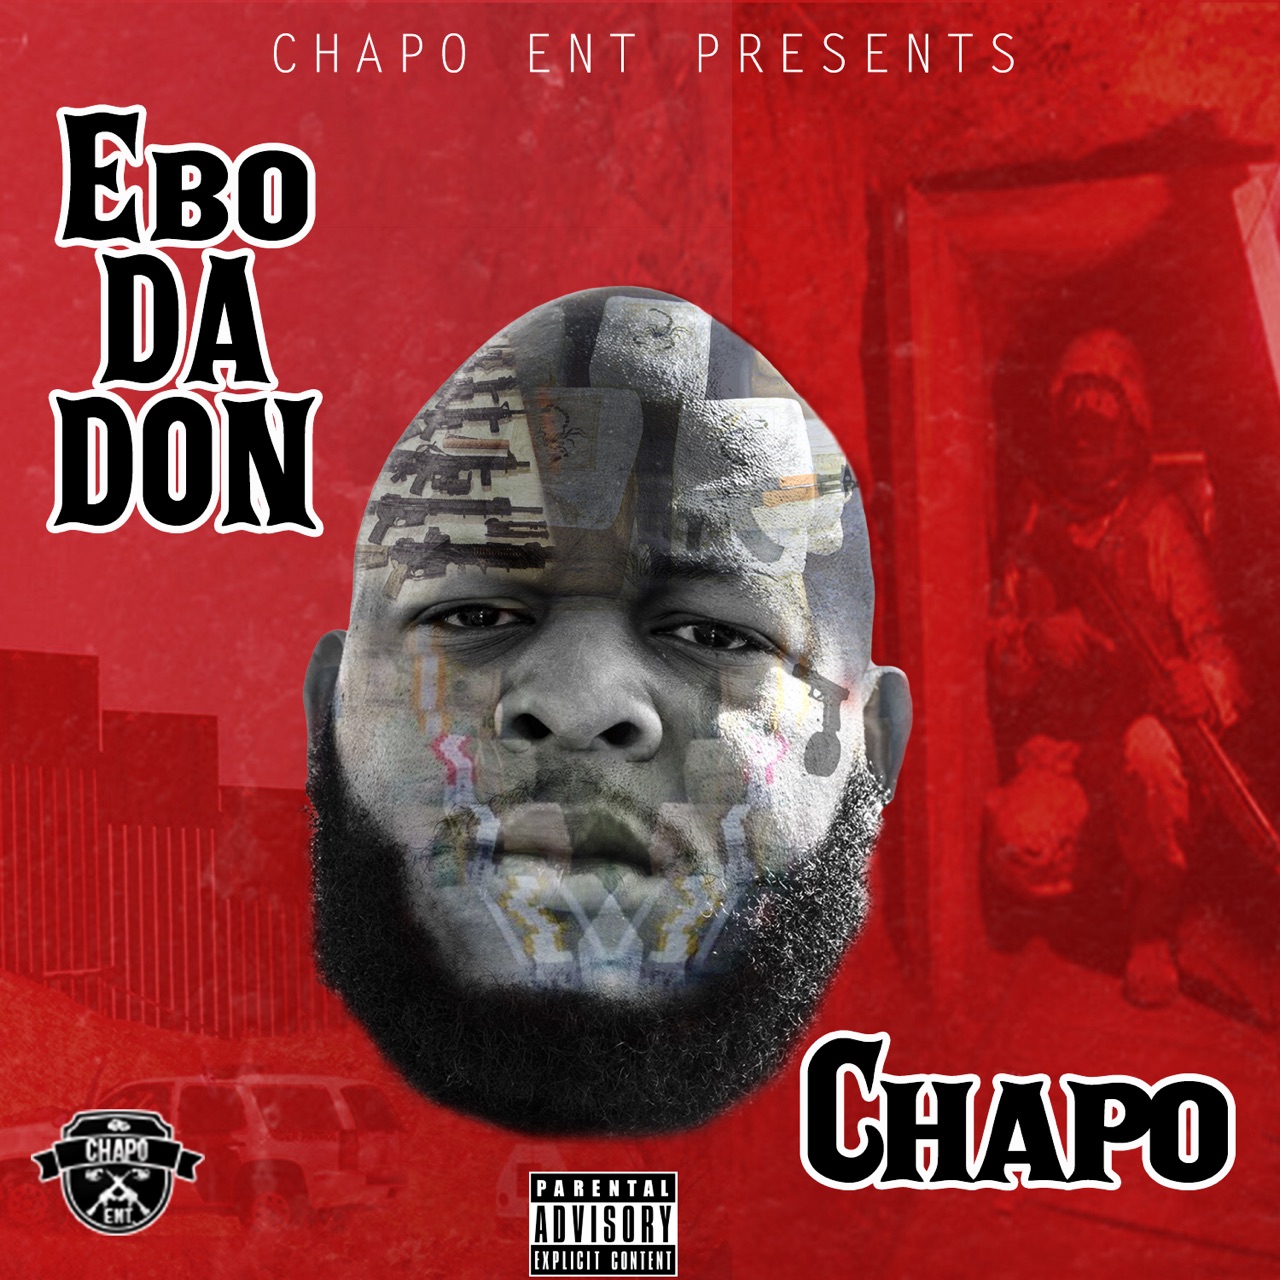 New Artist @EboDaDonn Drops 3 Hot Singles| LEAK QUEEN DJ EDITION